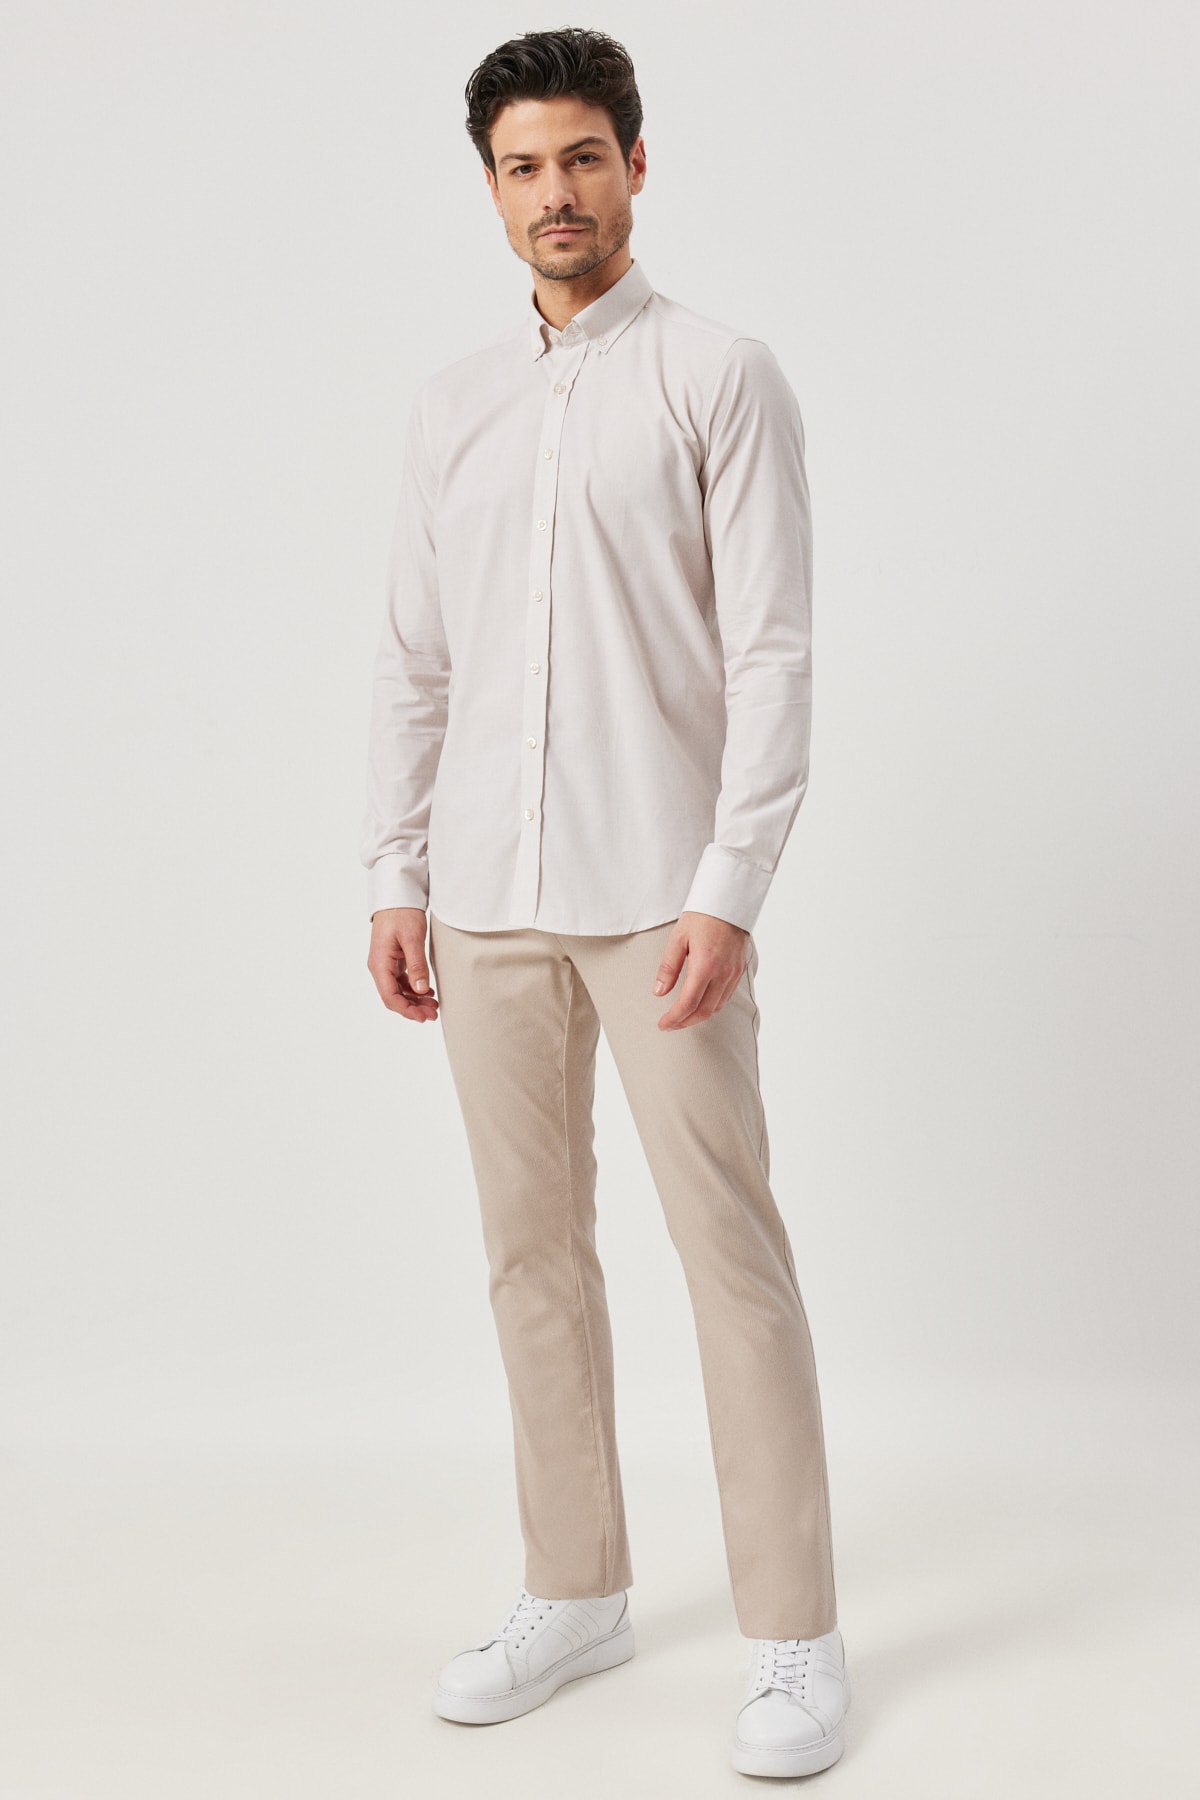 Levně ALTINYILDIZ CLASSICS Men's Beige Slim Fit Slim Fit Buttoned Collar Patterned Shirt